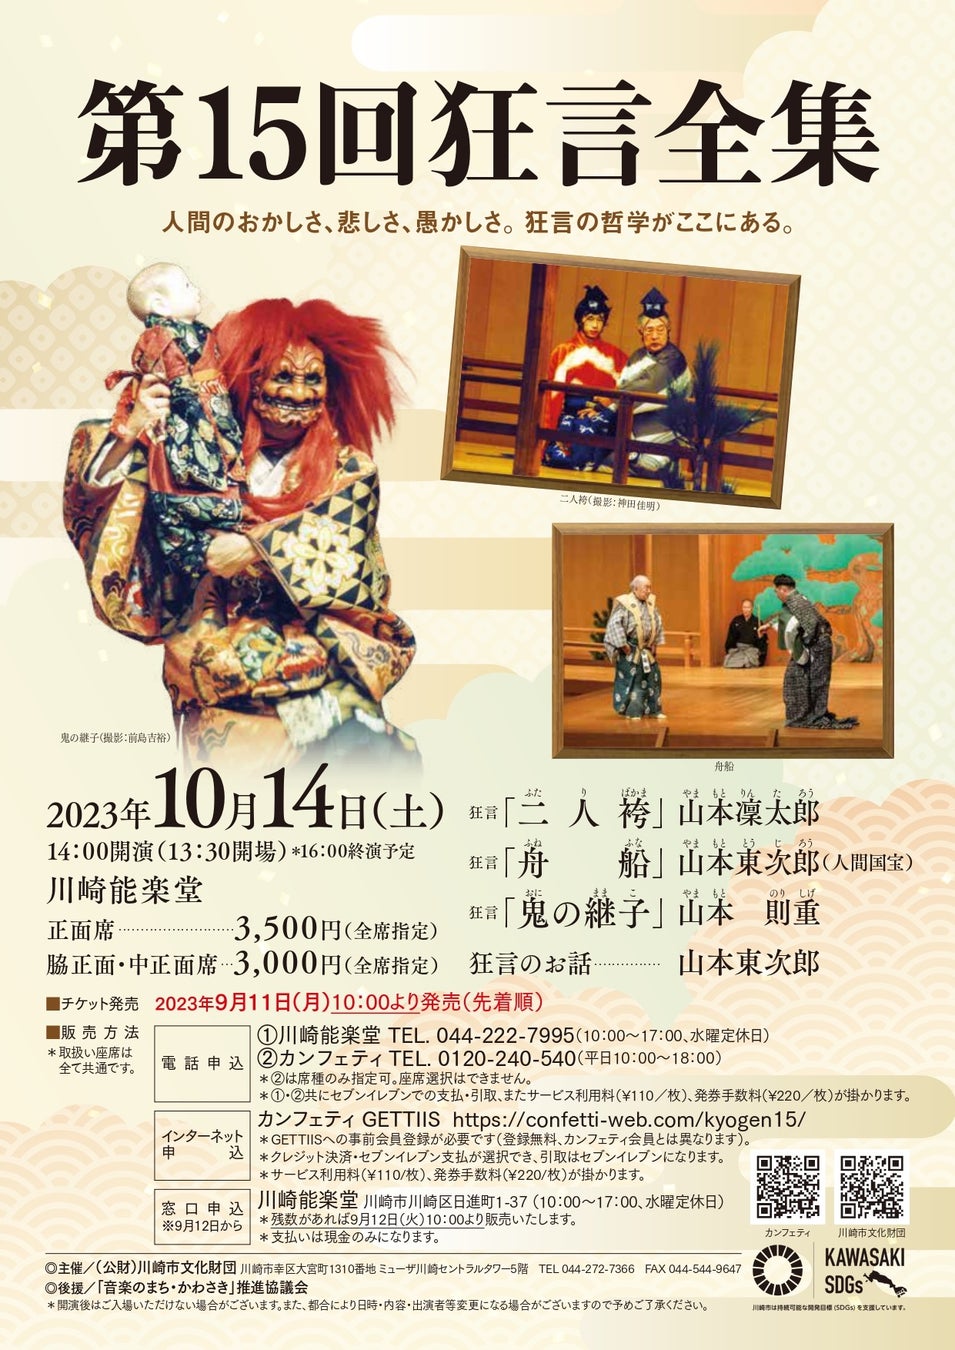 亀井登志夫『夢であいましょう』コンサート @billboard LIVE OSAKA 2023年10月21日(土)